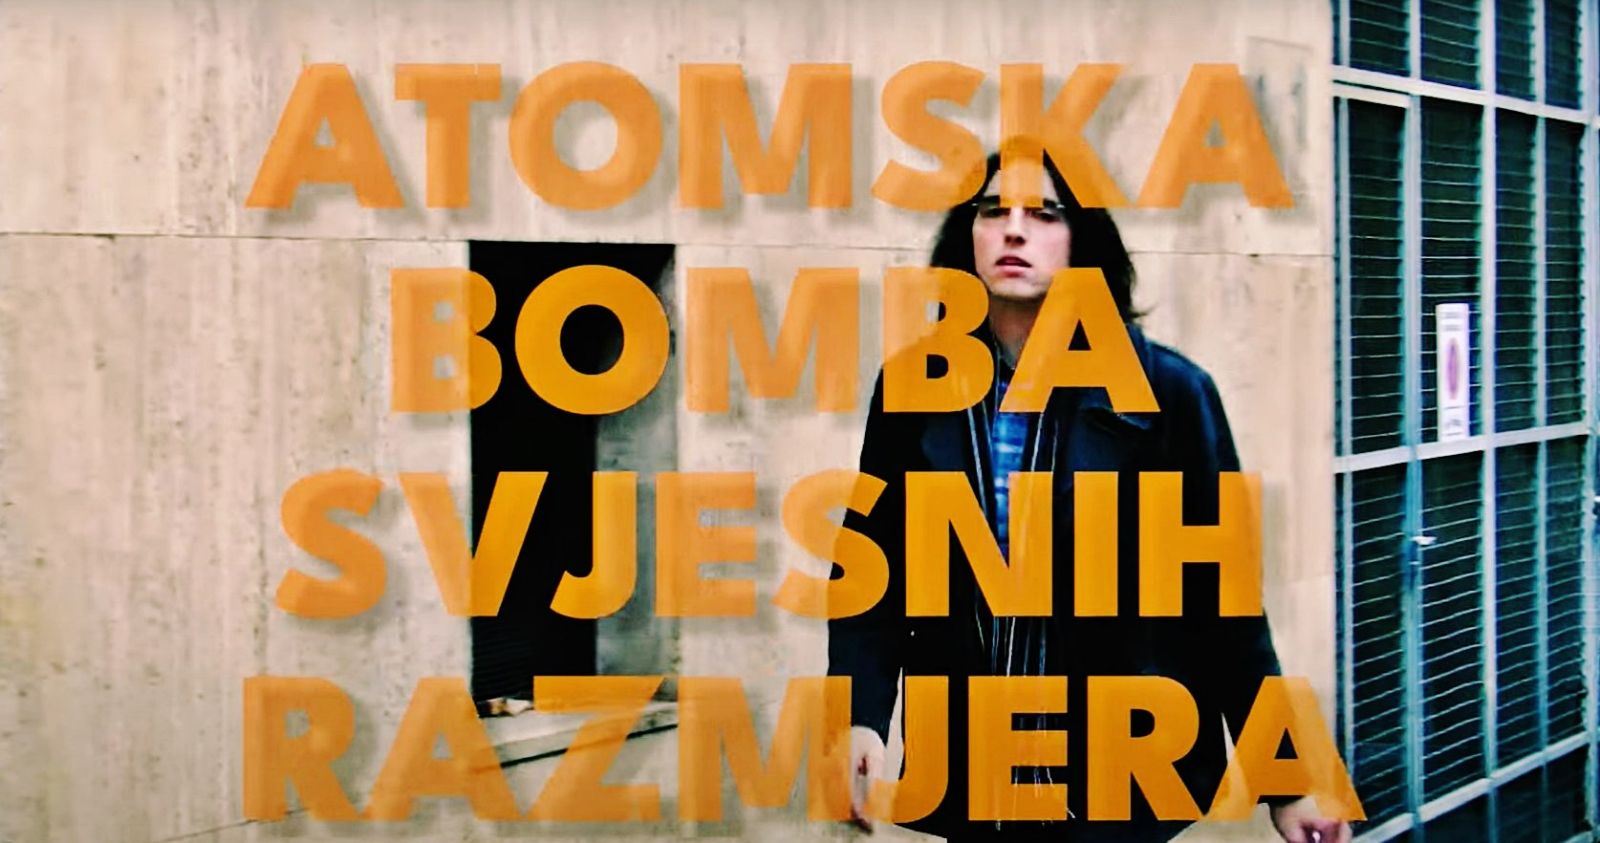 "Atomska bomba svjesnih razmjera" je ime novog singla